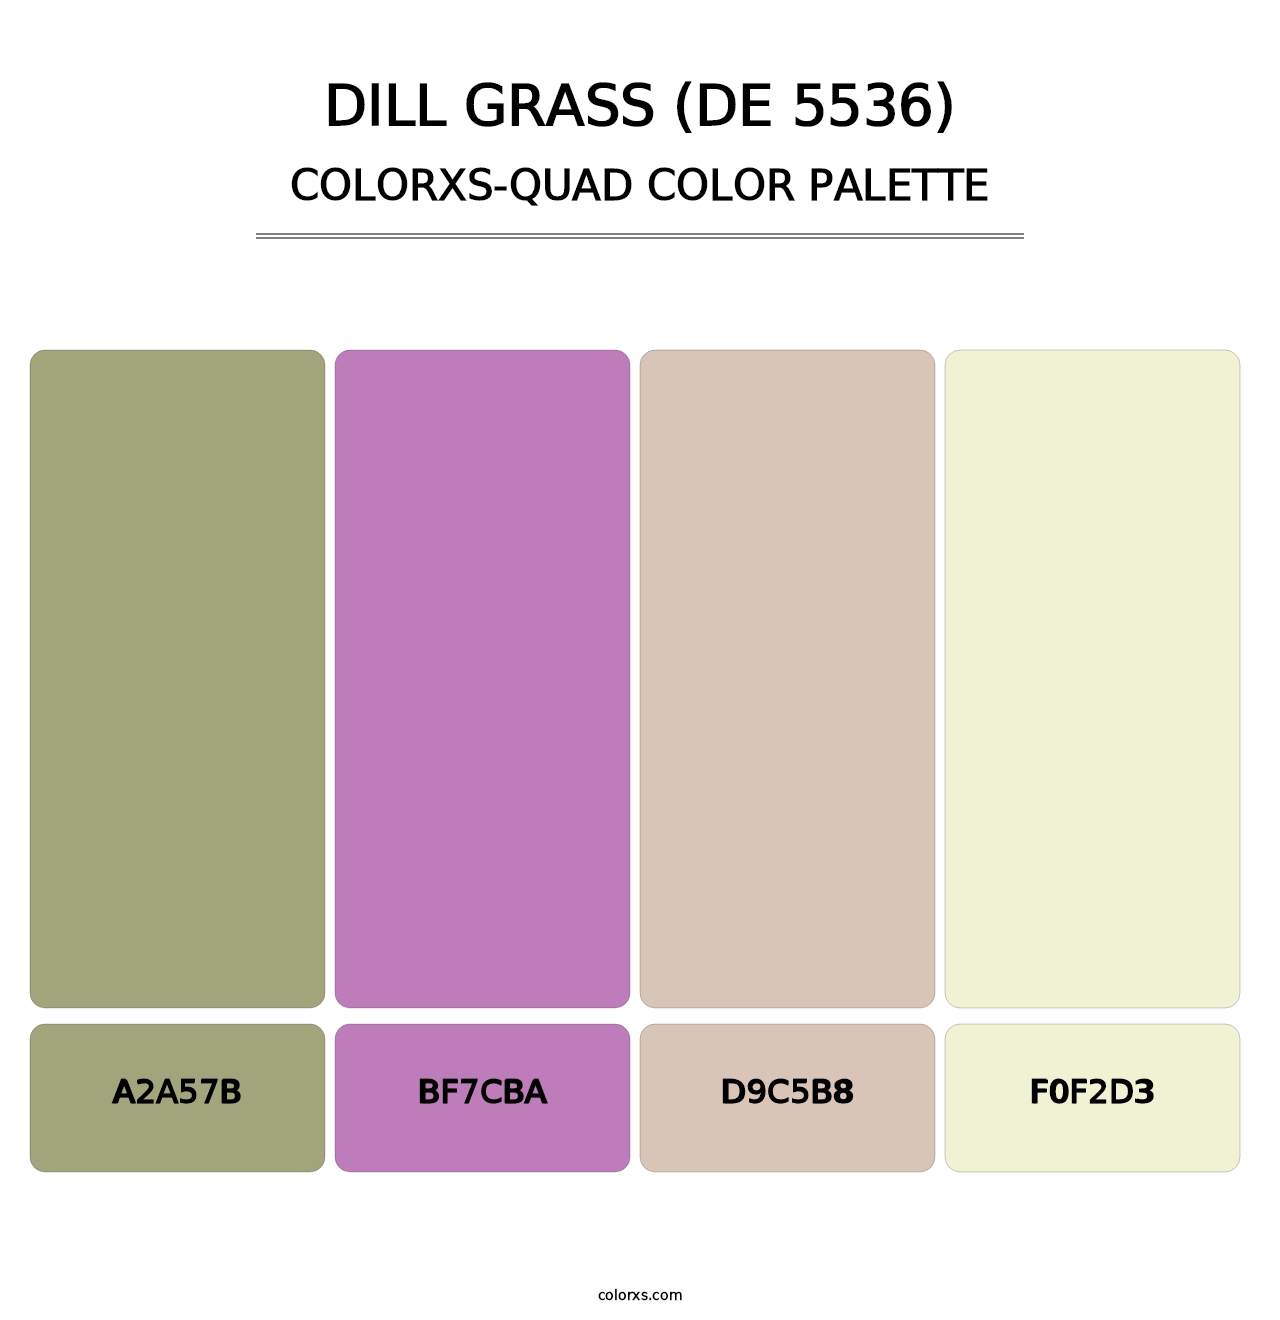 Dill Grass (DE 5536) - Colorxs Quad Palette